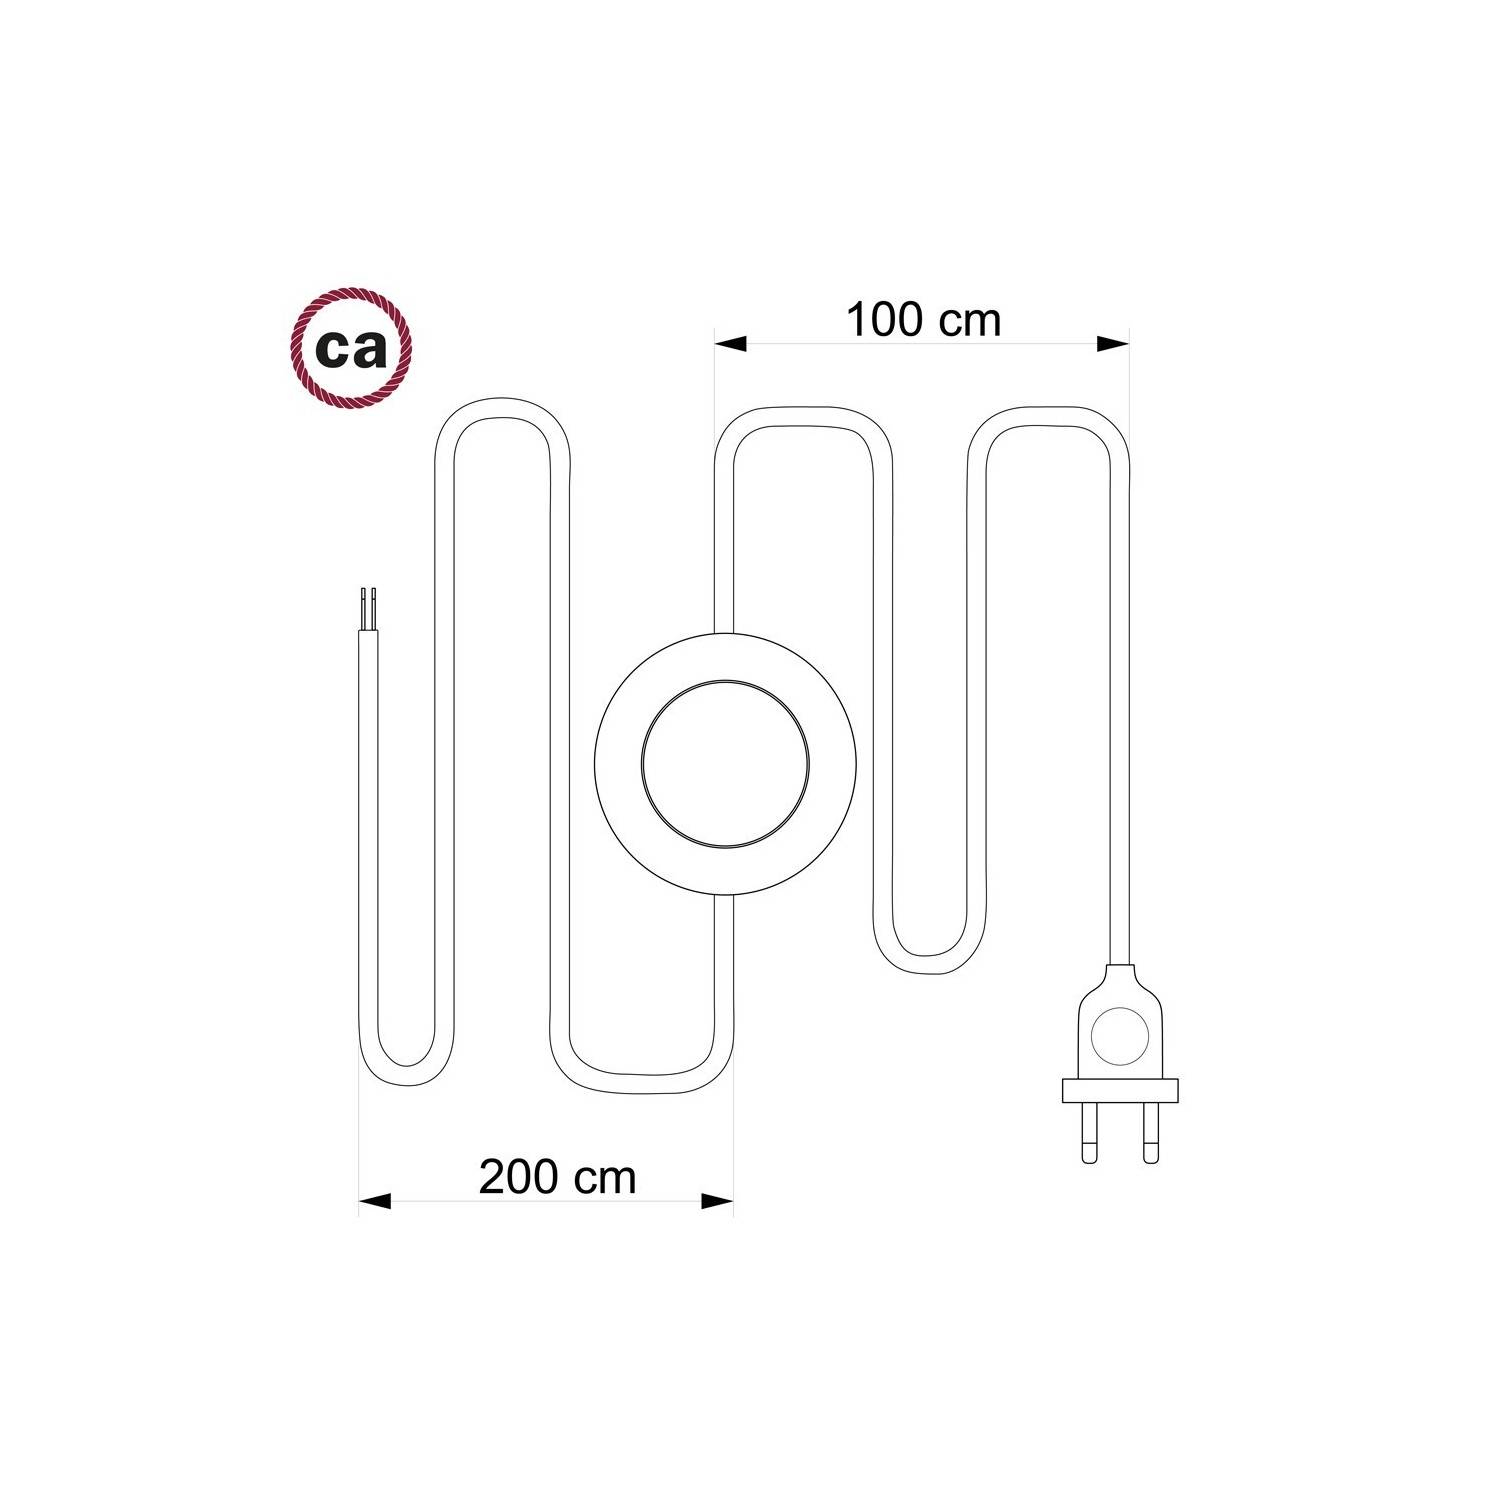 Υφασματινο Καλώδιο για Φωτιστικά Δαπέδου RM14 Μωβ - 3 m. Με διακόπτη ποδός και φις.